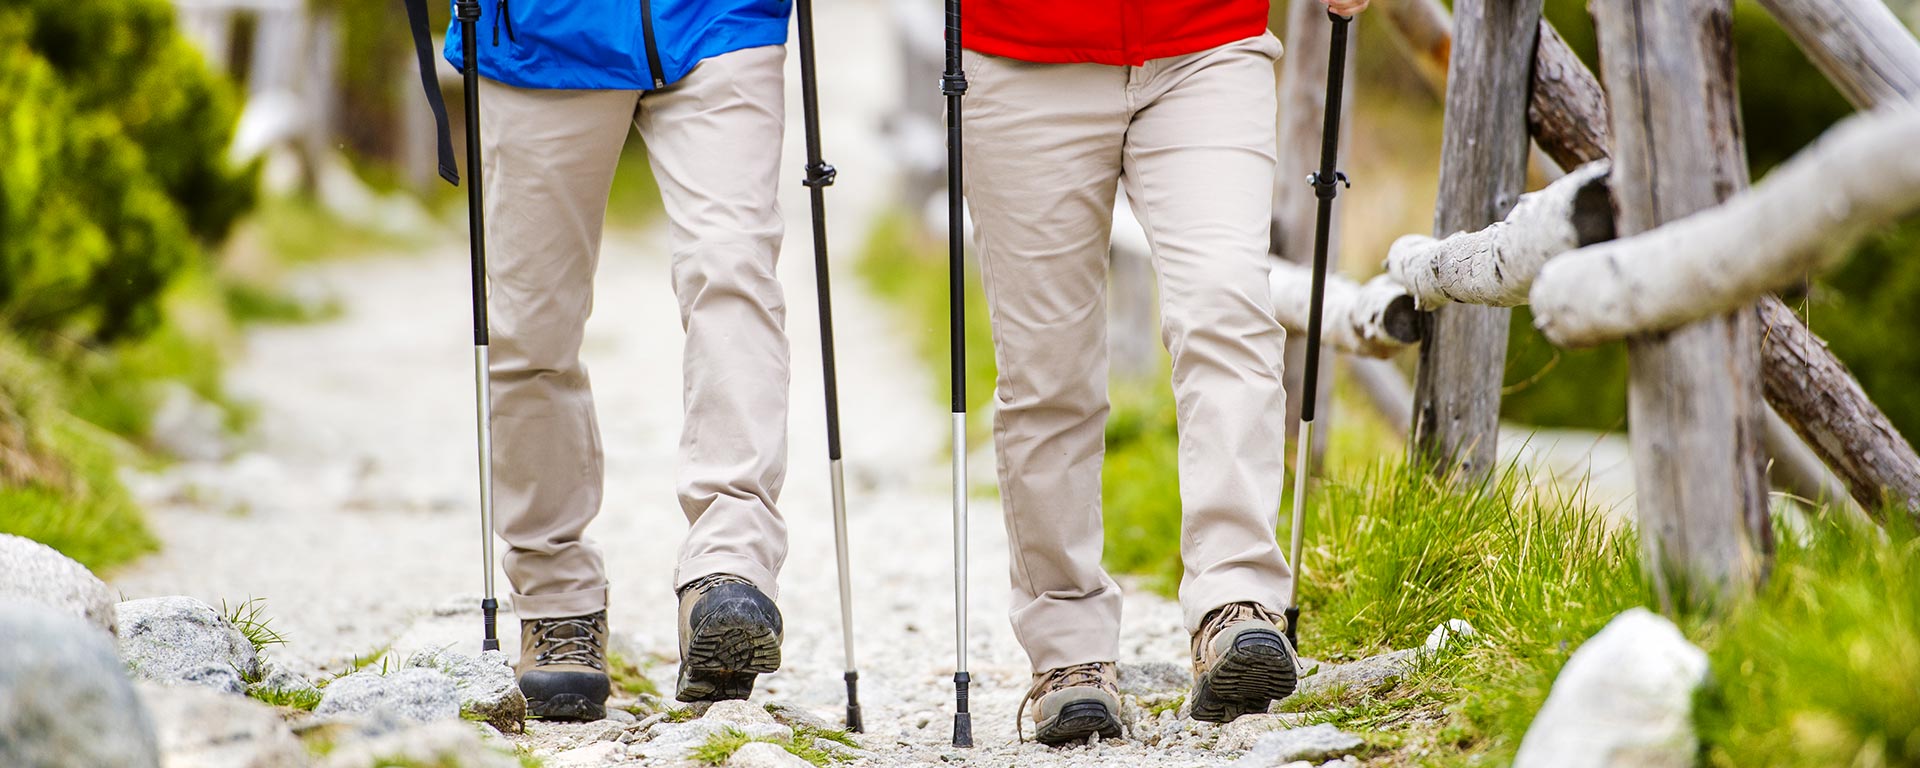 Due escursionisti con scarponi e bastoncini camminano lungo i sentieri di montagna durante un'escursione nei pressi di San Vigilio di Marebbe